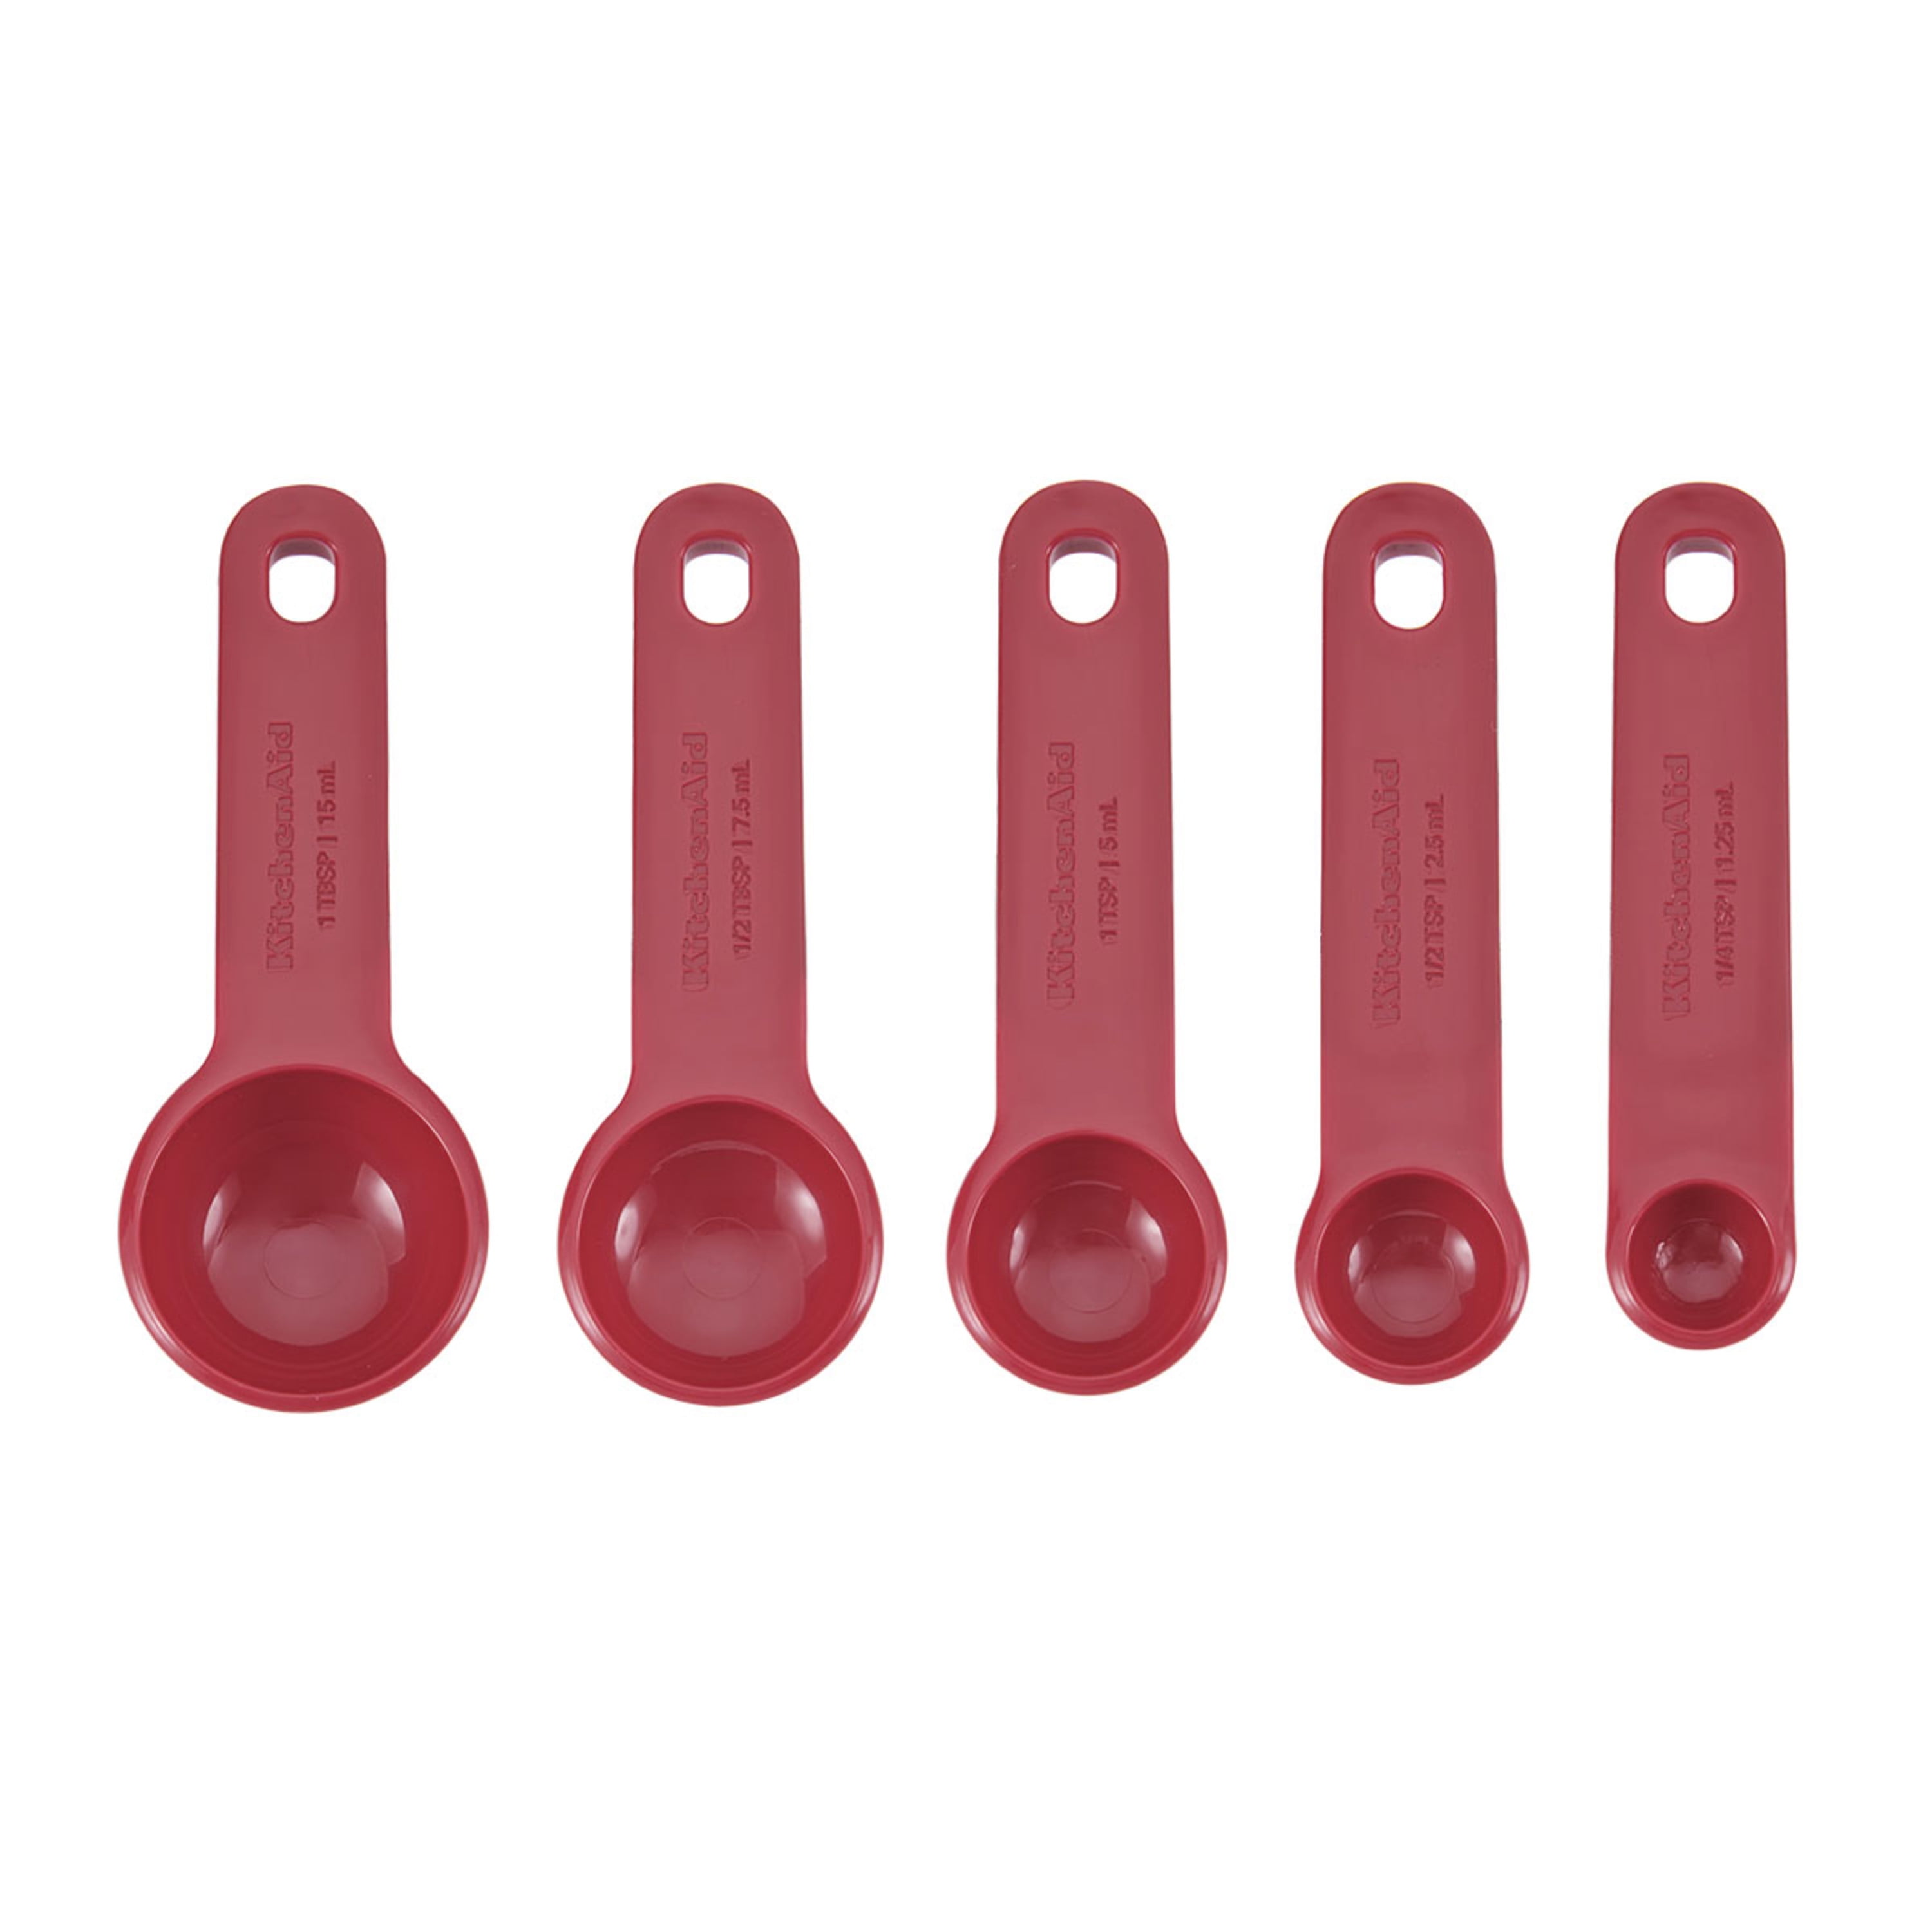 Custom Adjustable Measuring Spoon - Essential Kitchen Tool